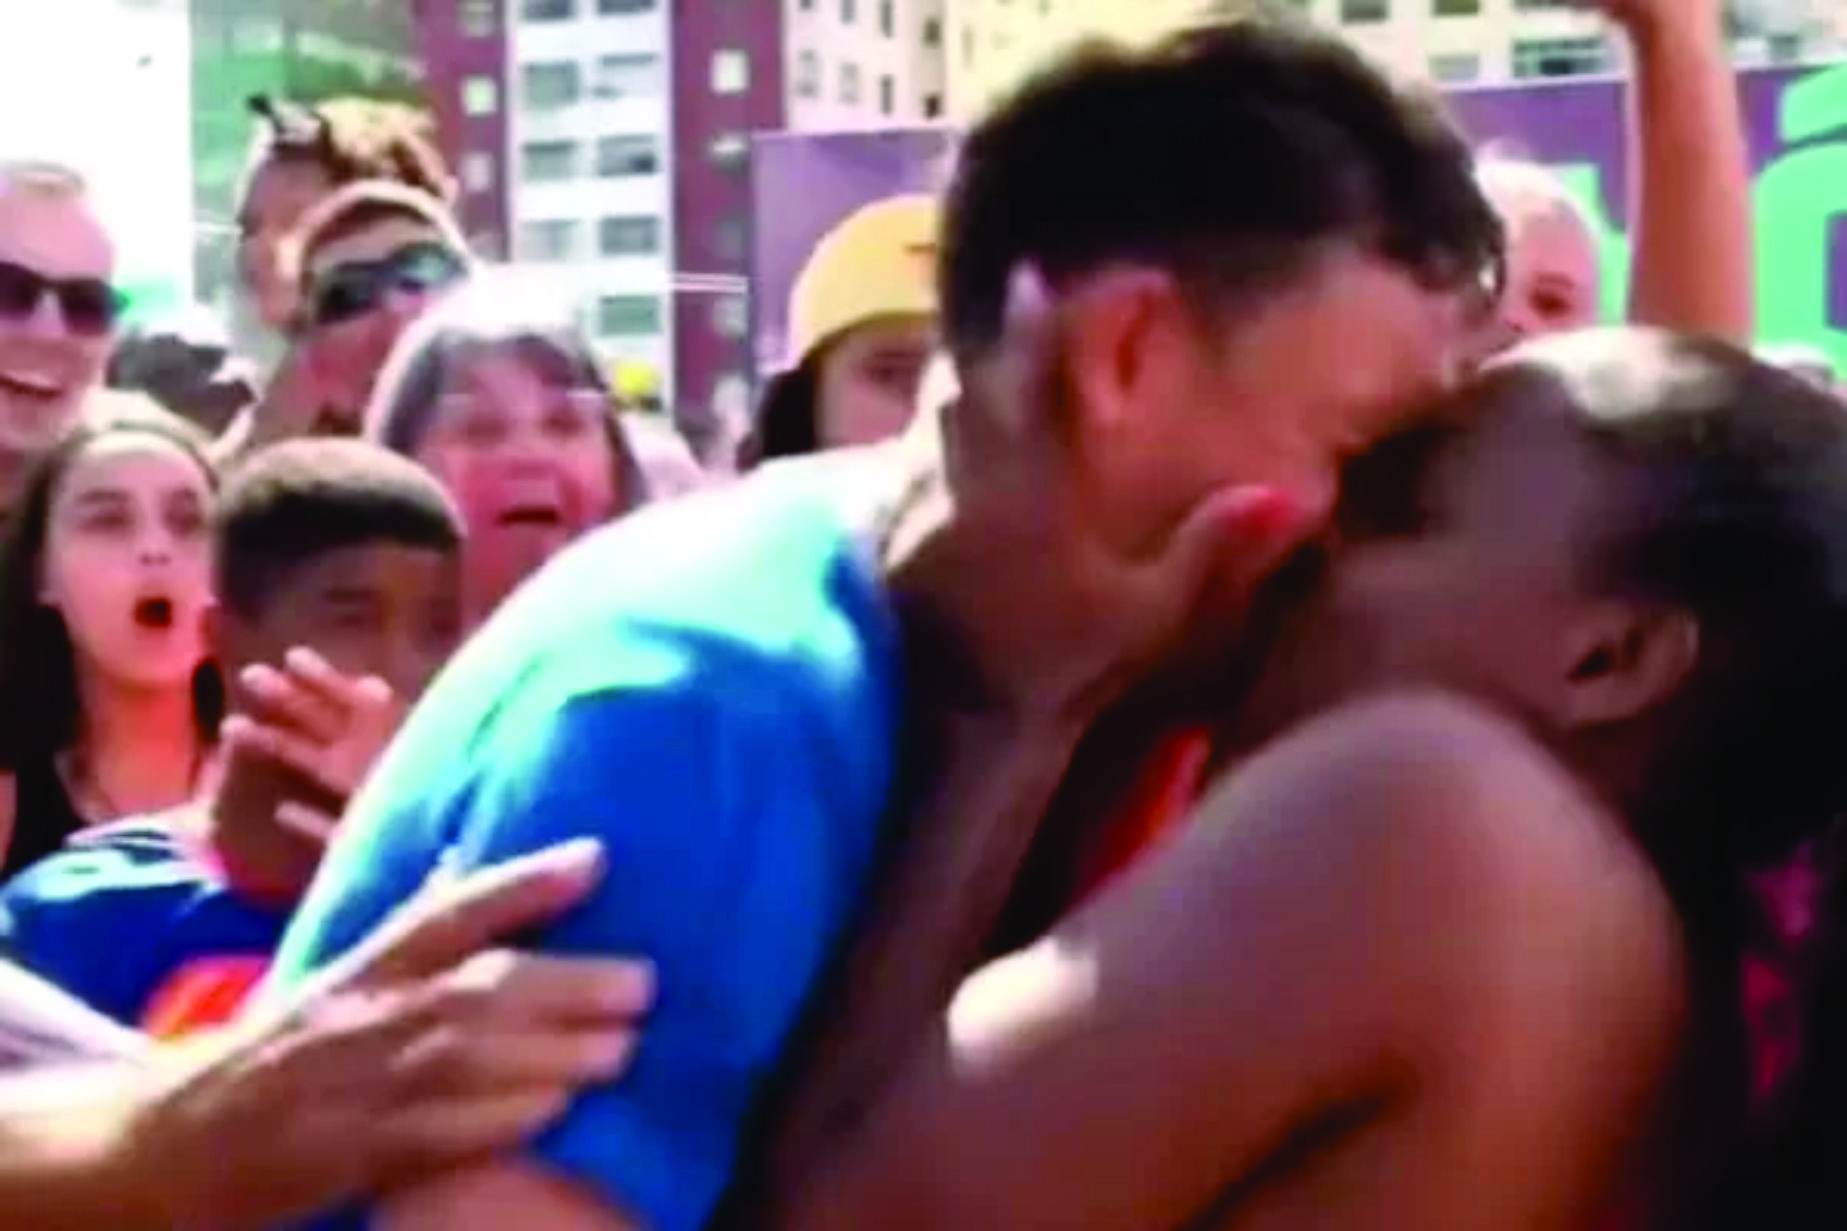 Repórter beijado “a força” no Carnaval diz que não foi assédio